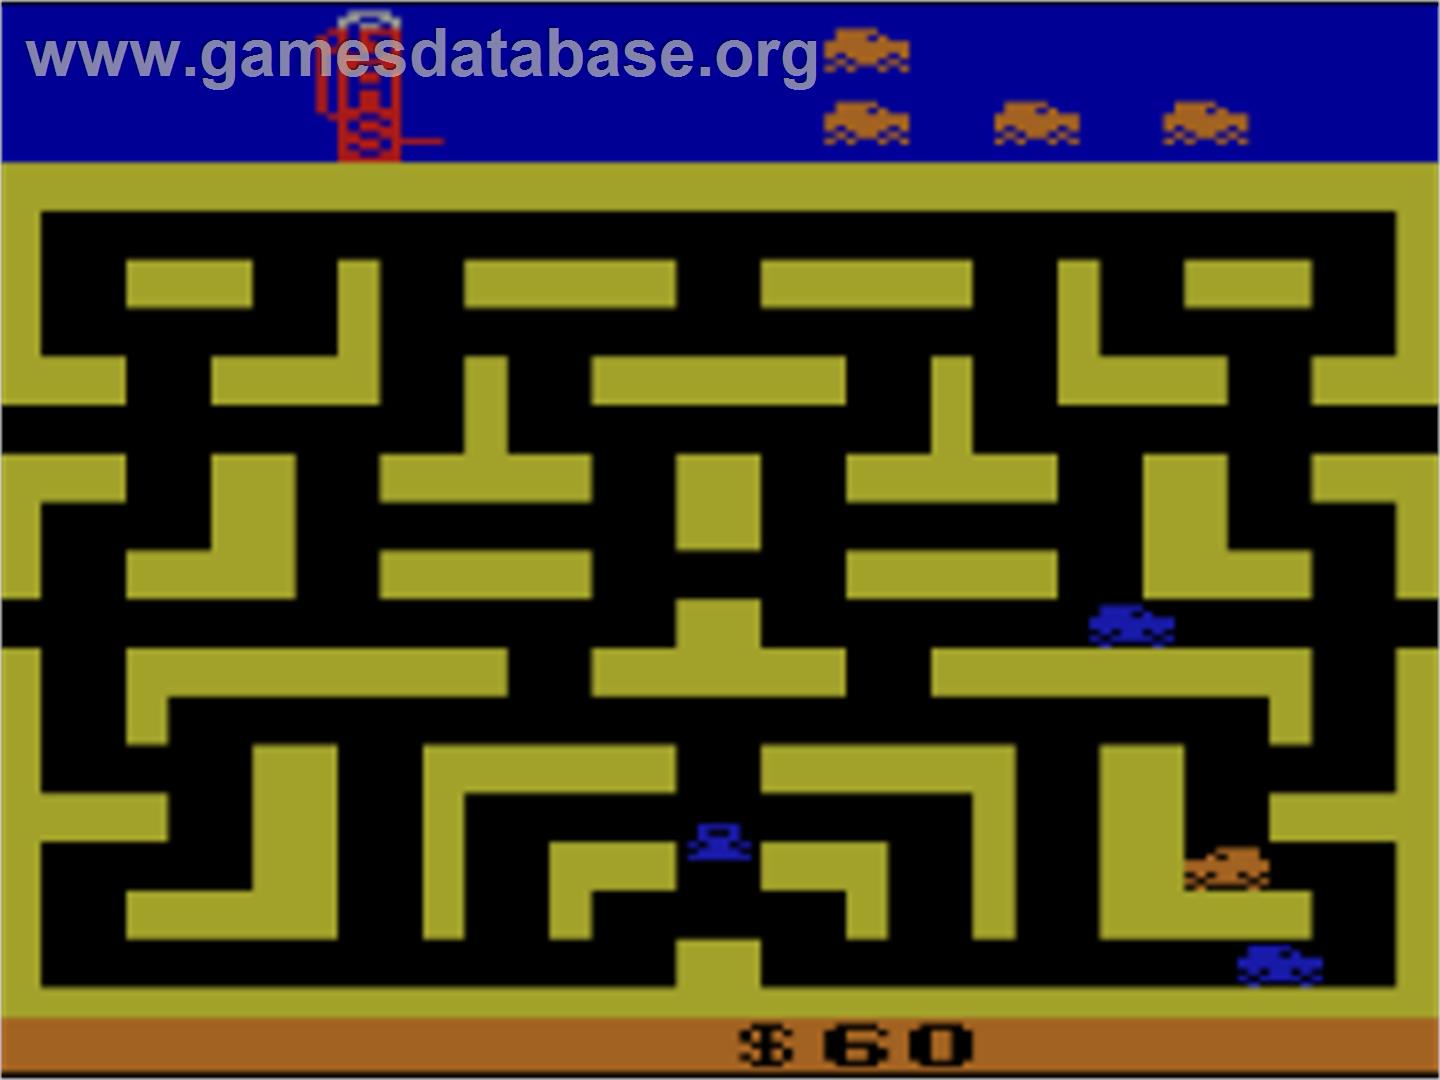 Bank Heist - Atari 2600 - Artwork - In Game